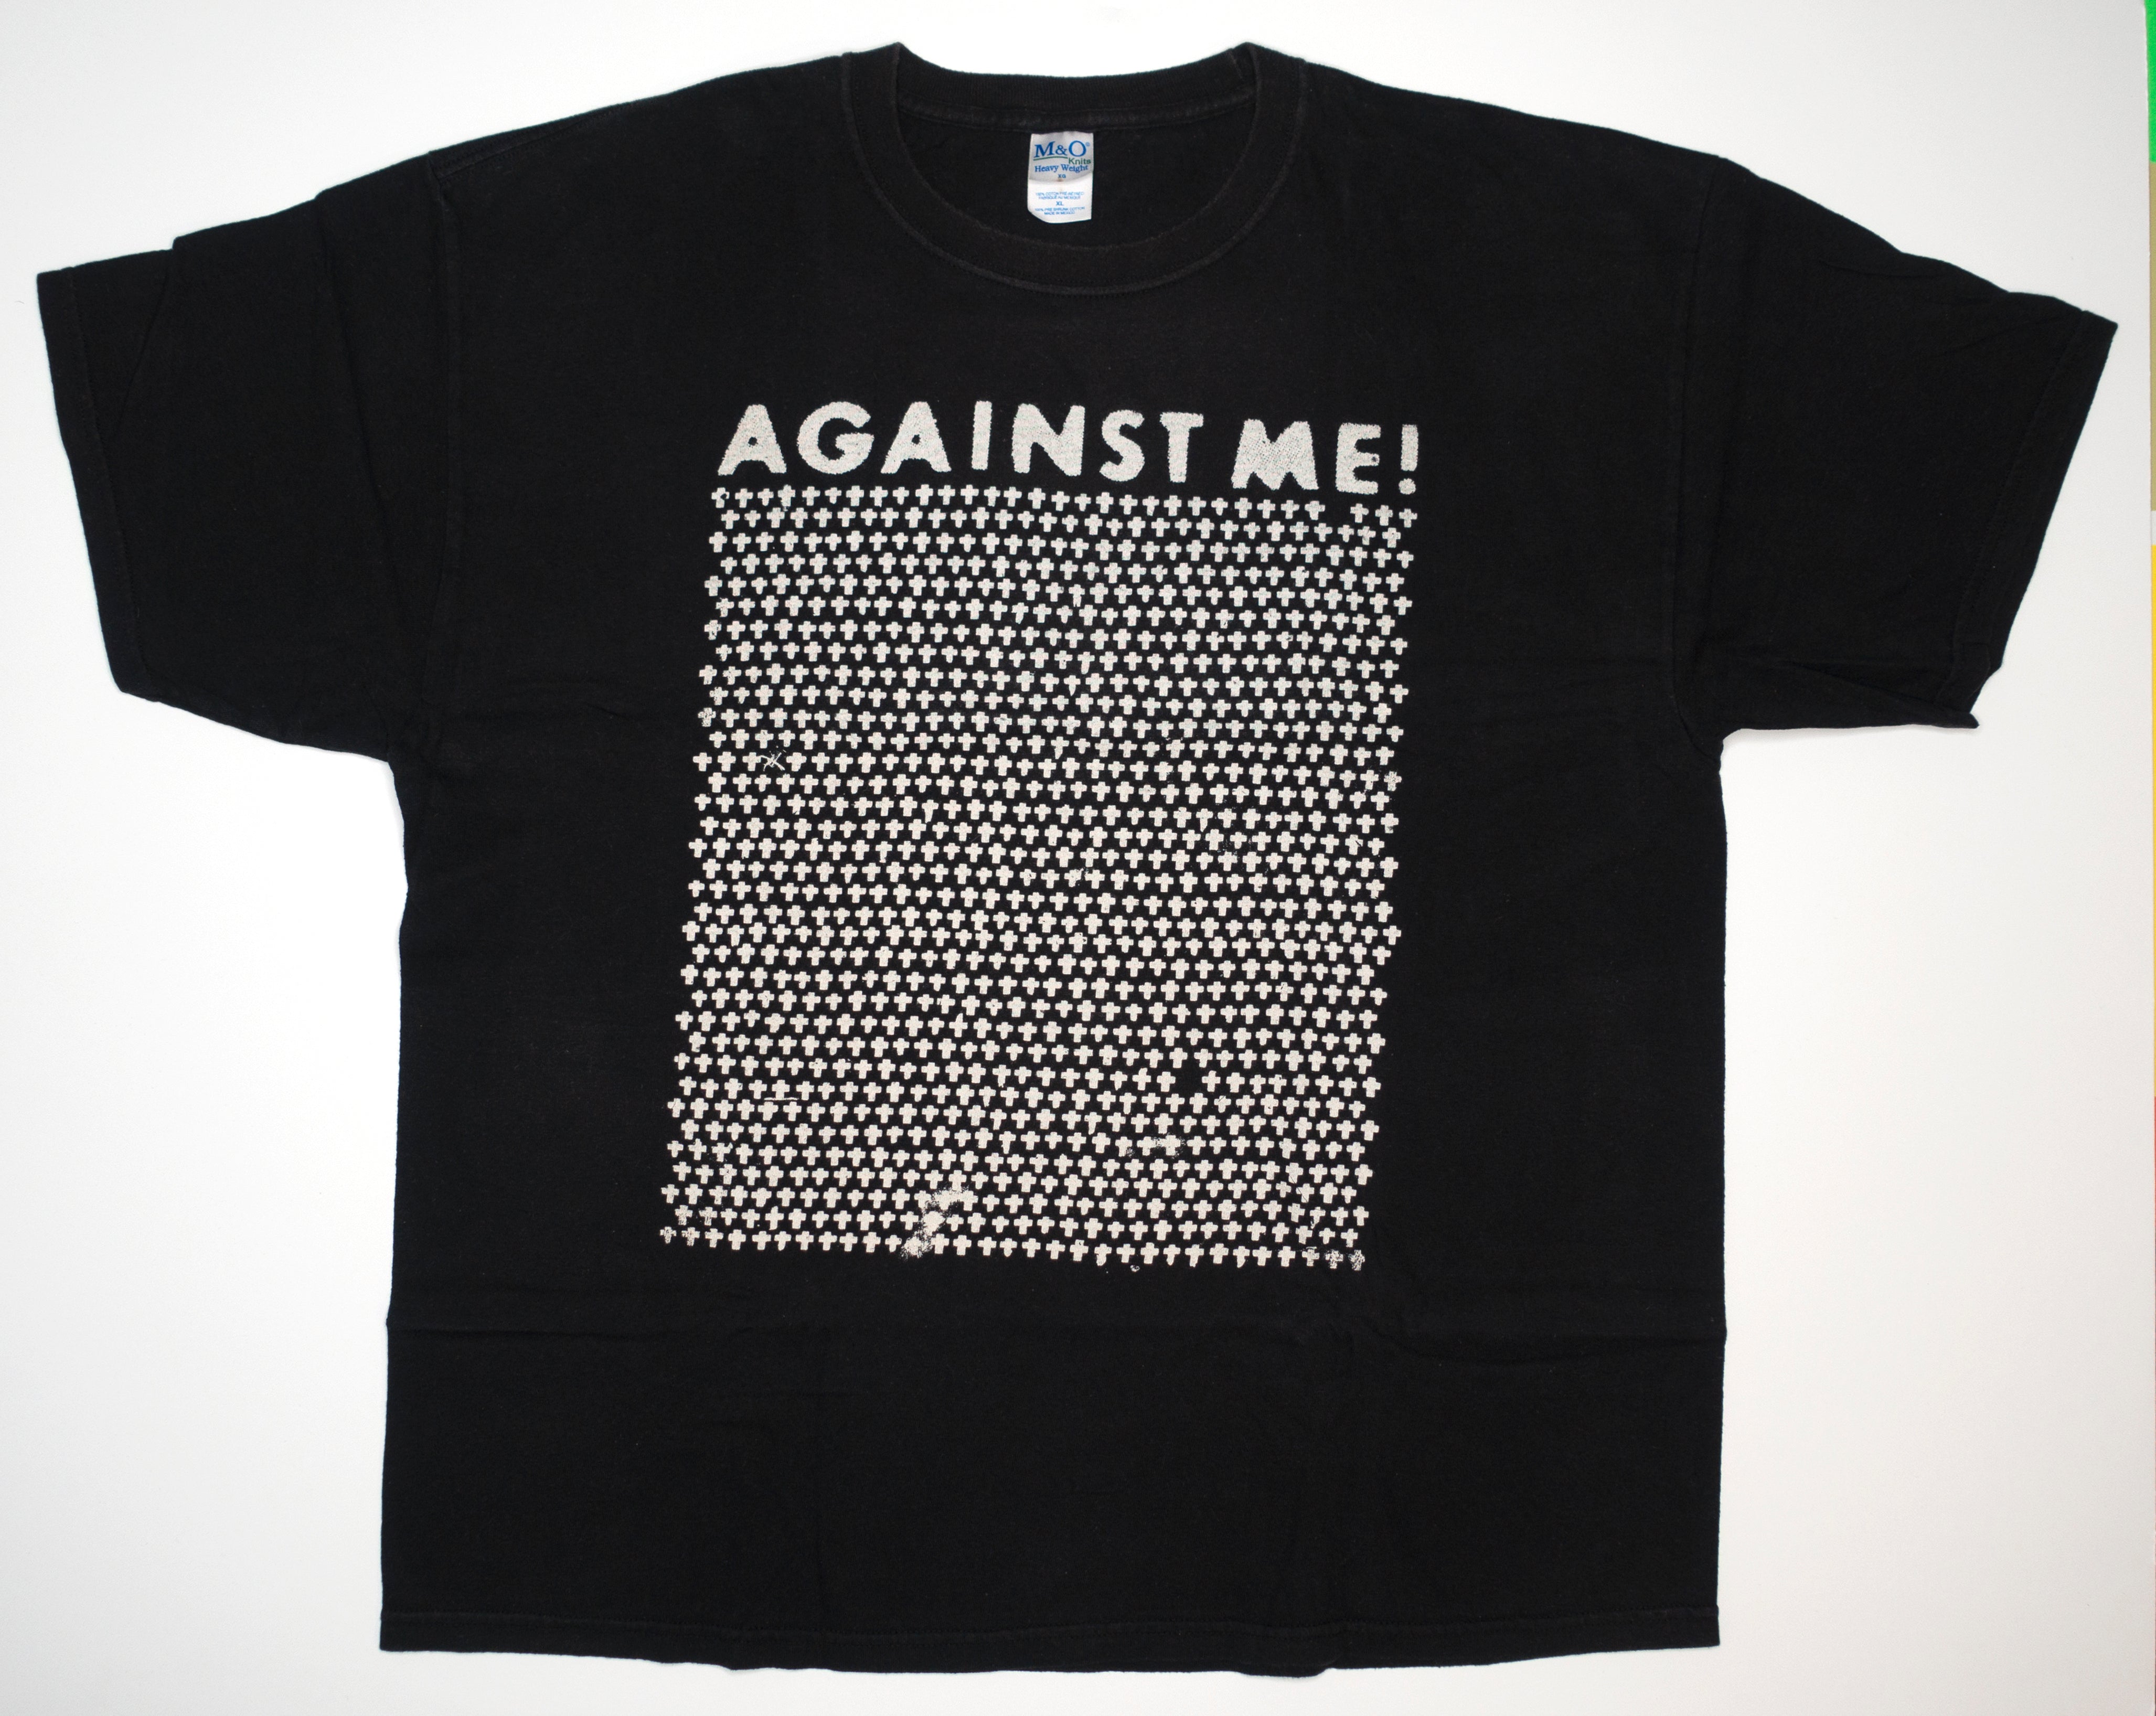 Against Me! - Crosses 00's Tour Shirt Size XL